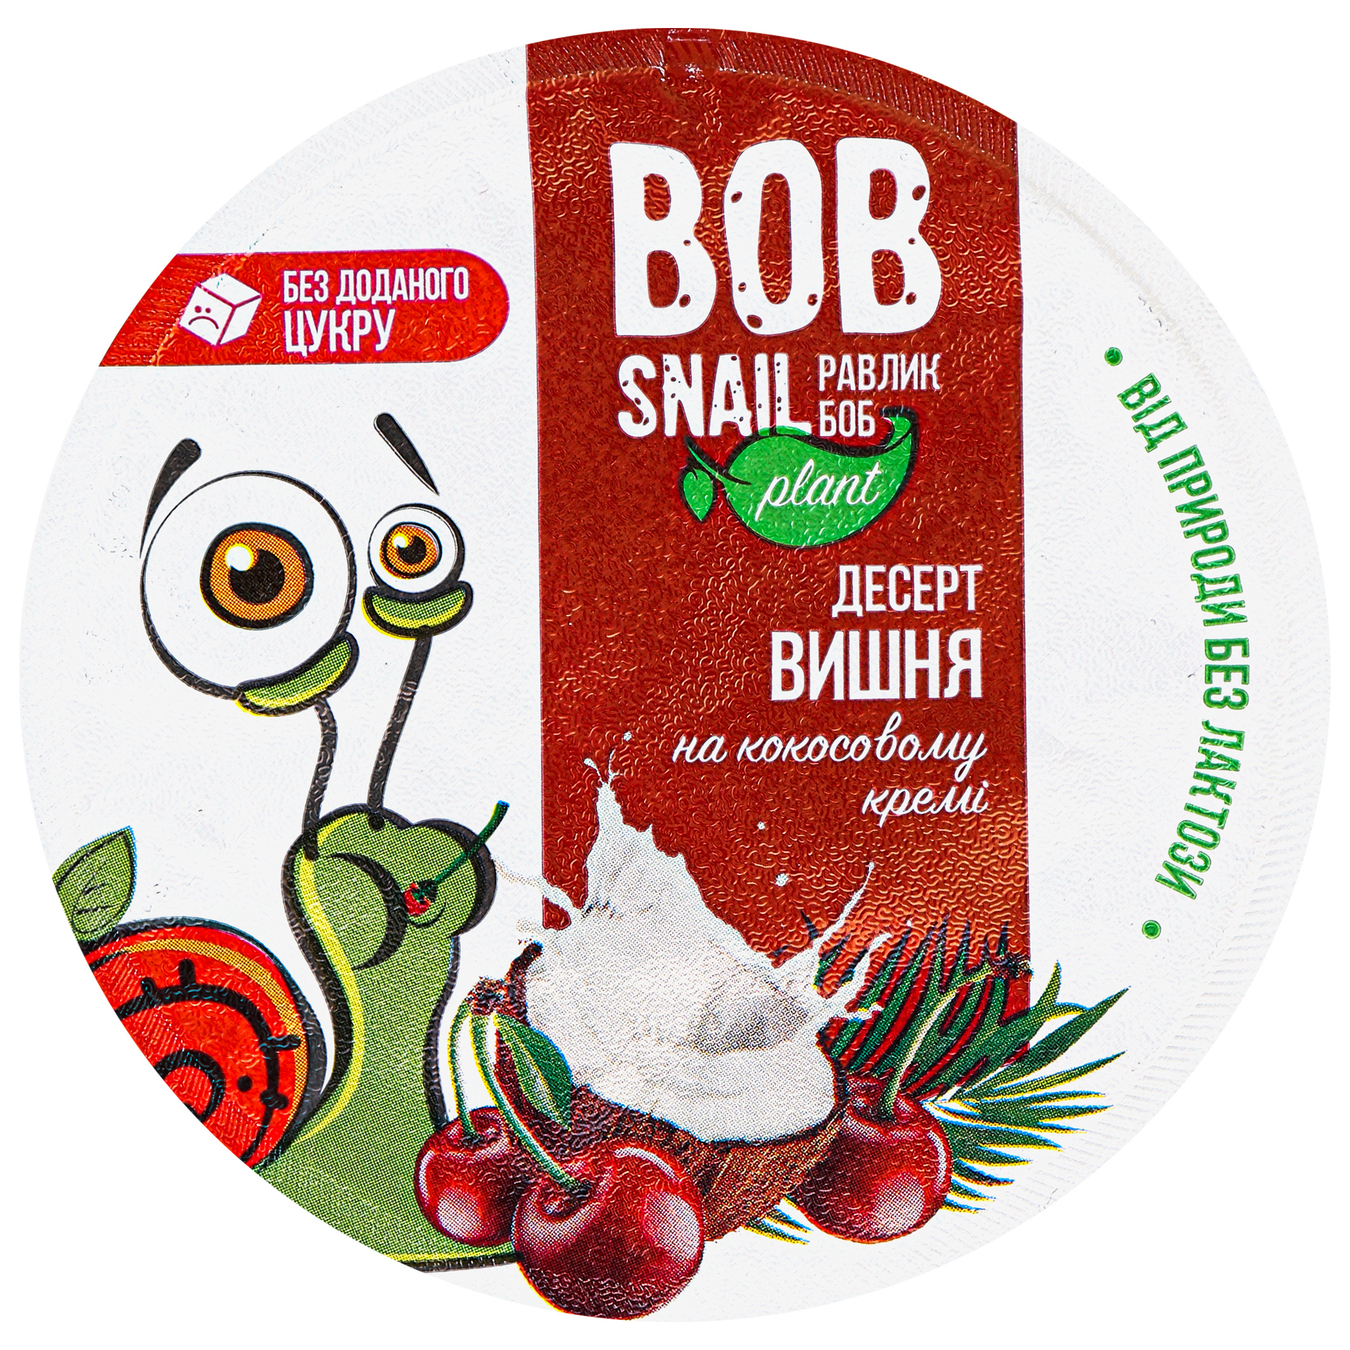 Десерт Bob Snail Вишня на кокосовому кремі 180г 2